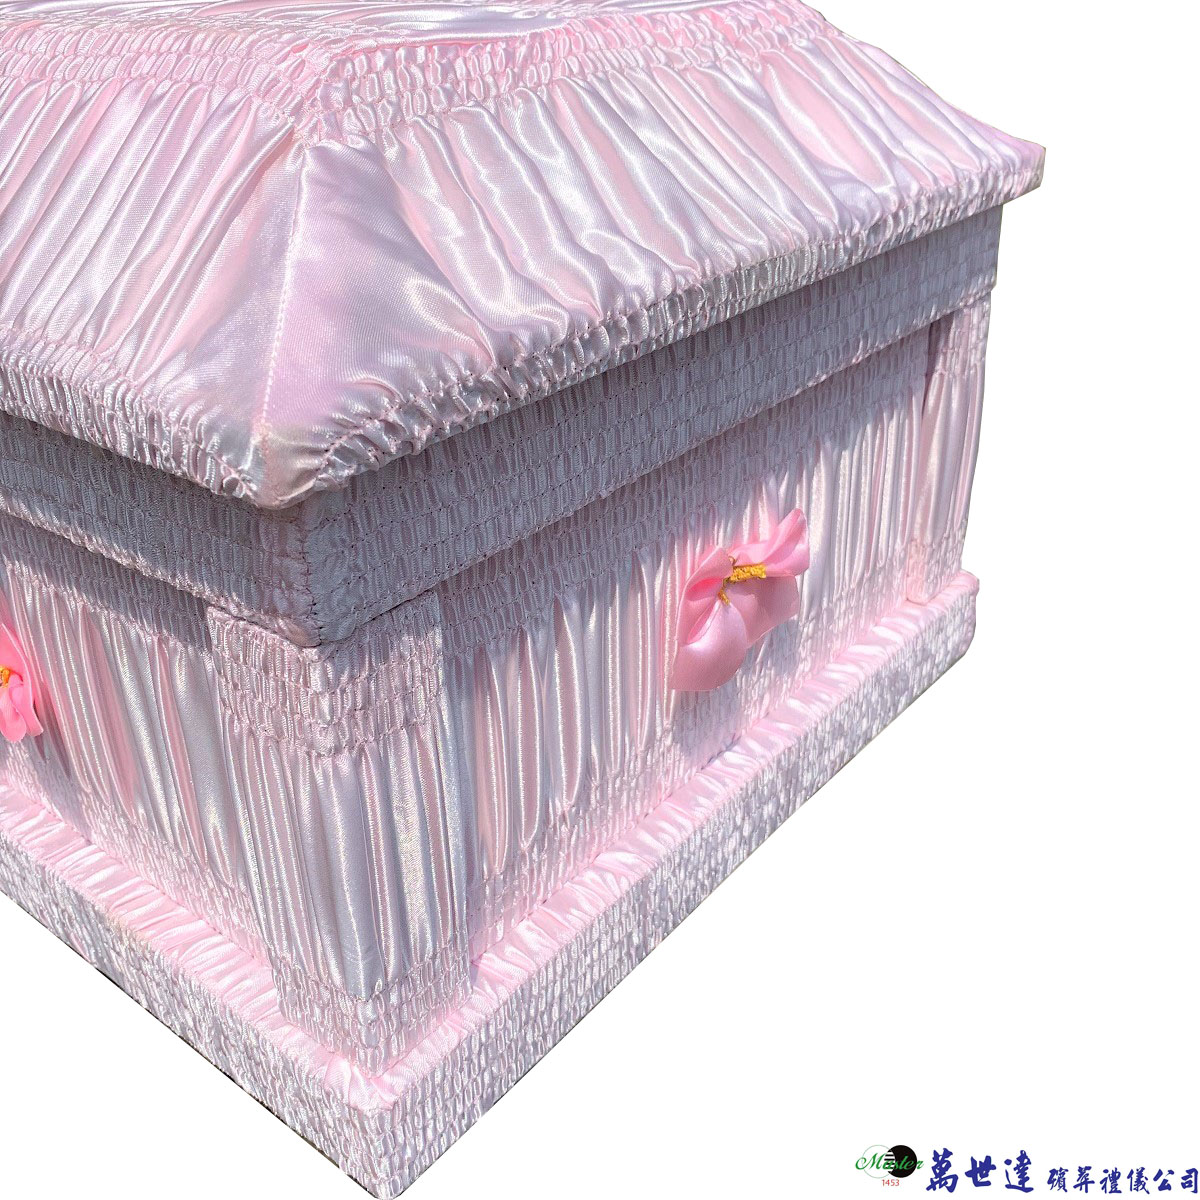 粉色天使棺(60公分)